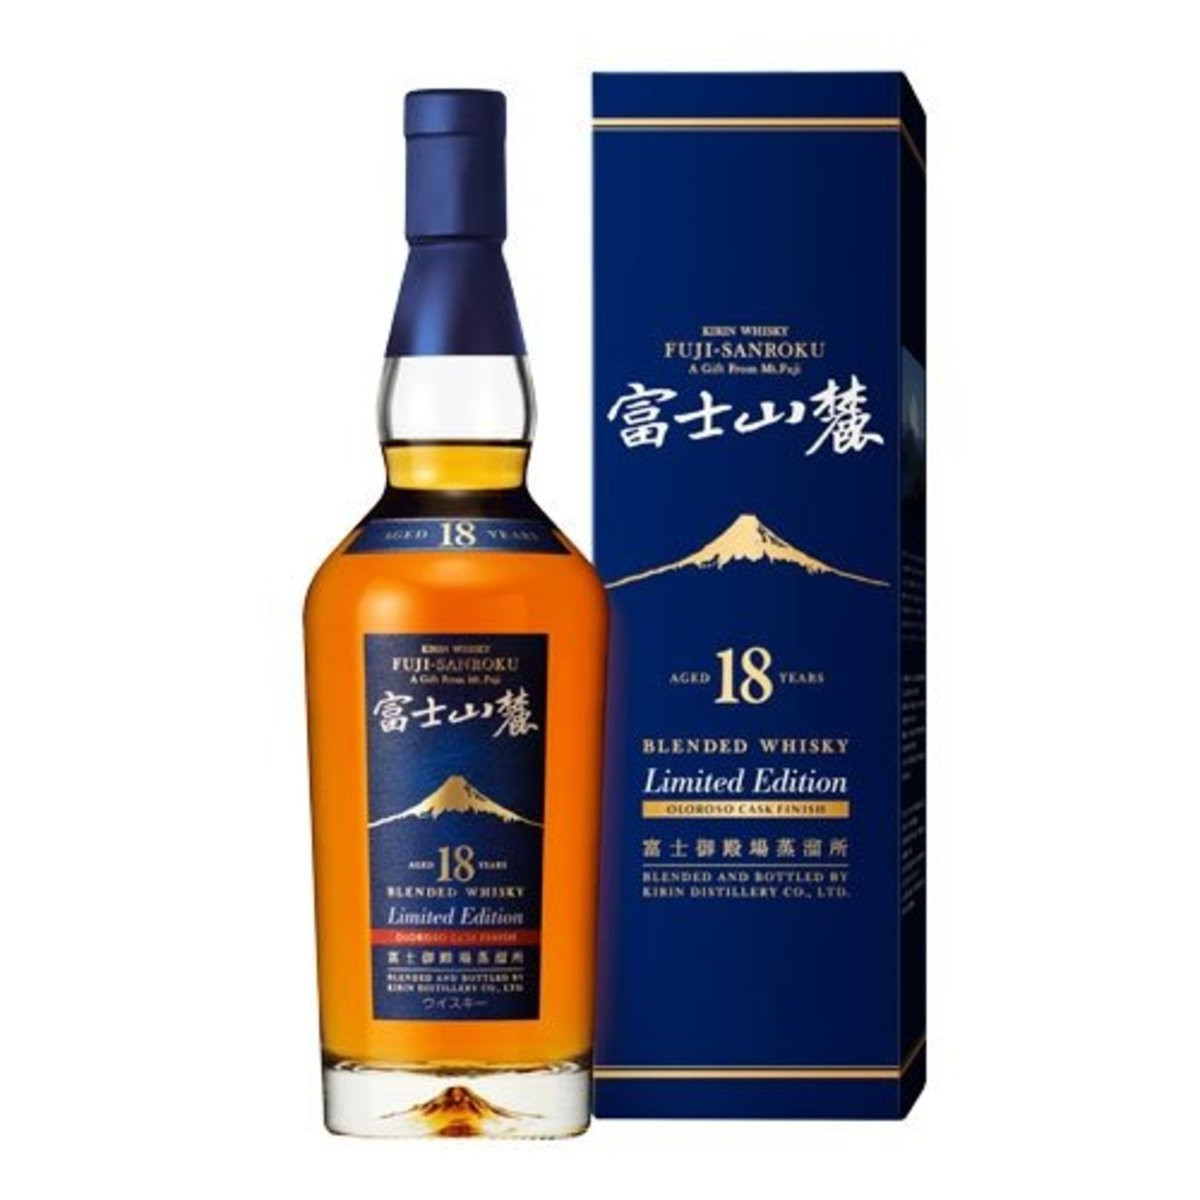 Kirin 富士山麓 18年 調和威士忌限量版